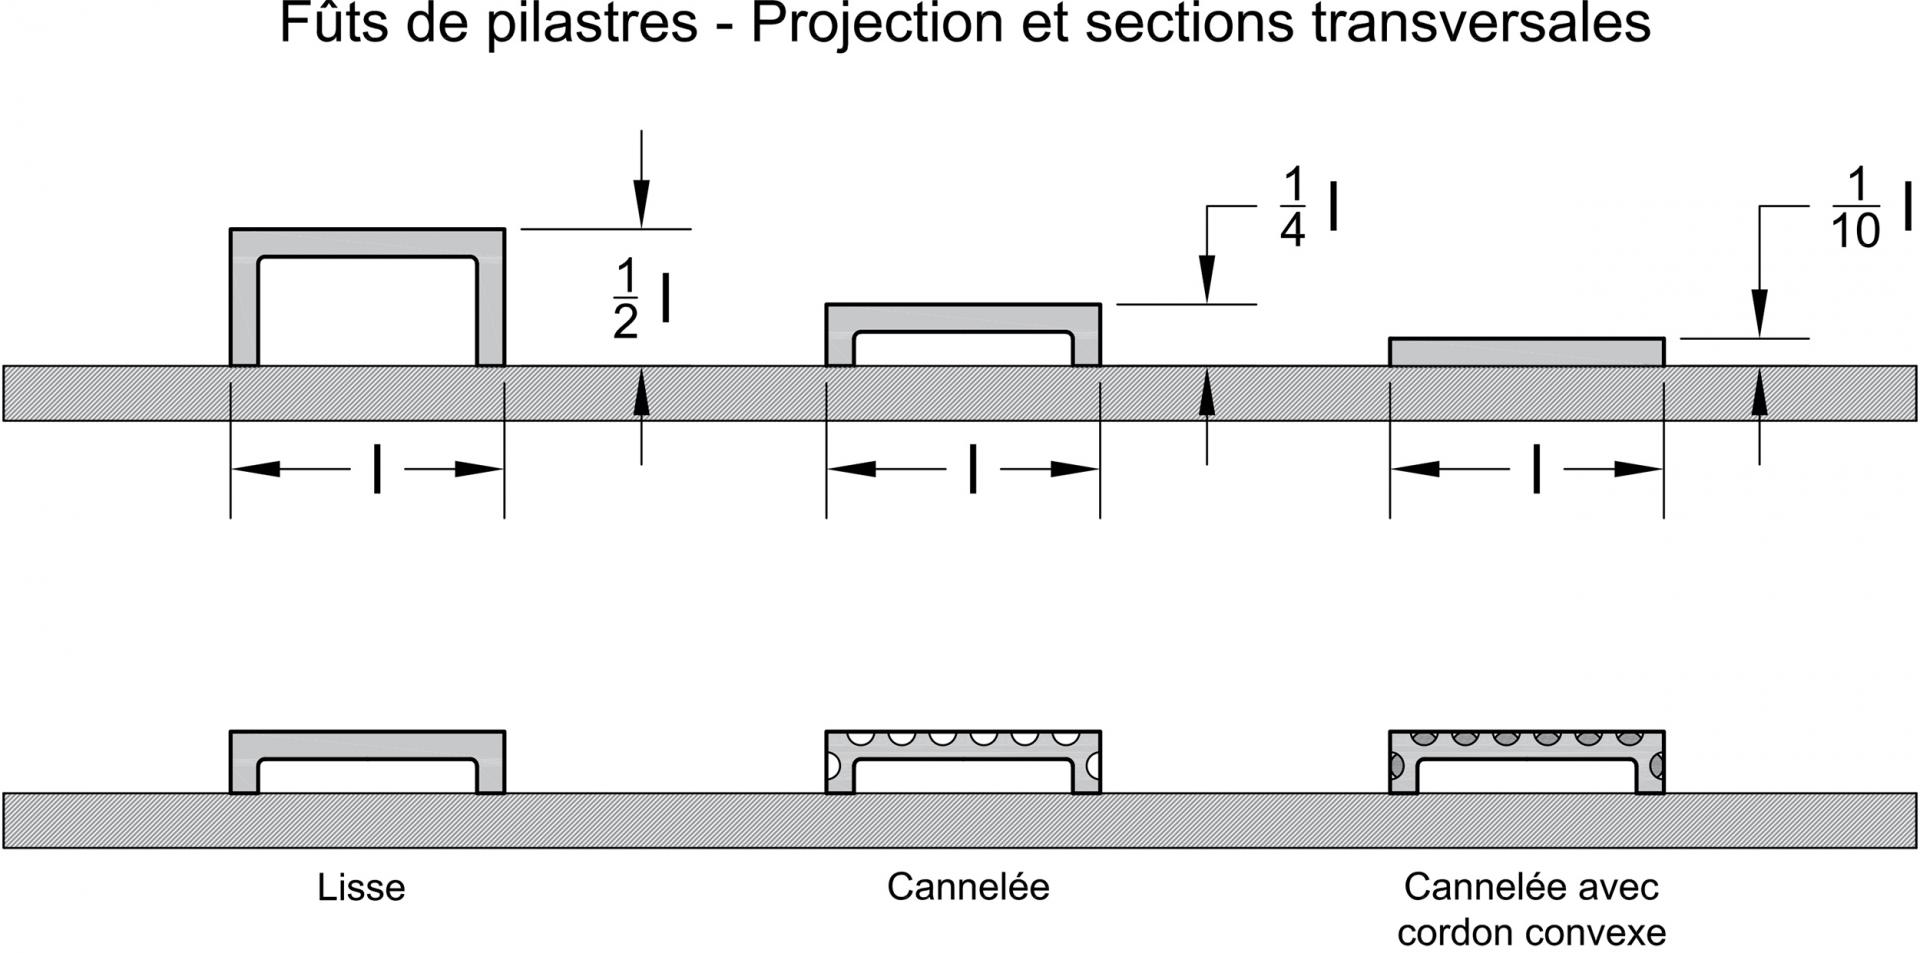 Fût de pilastres - Projection et sections transversales